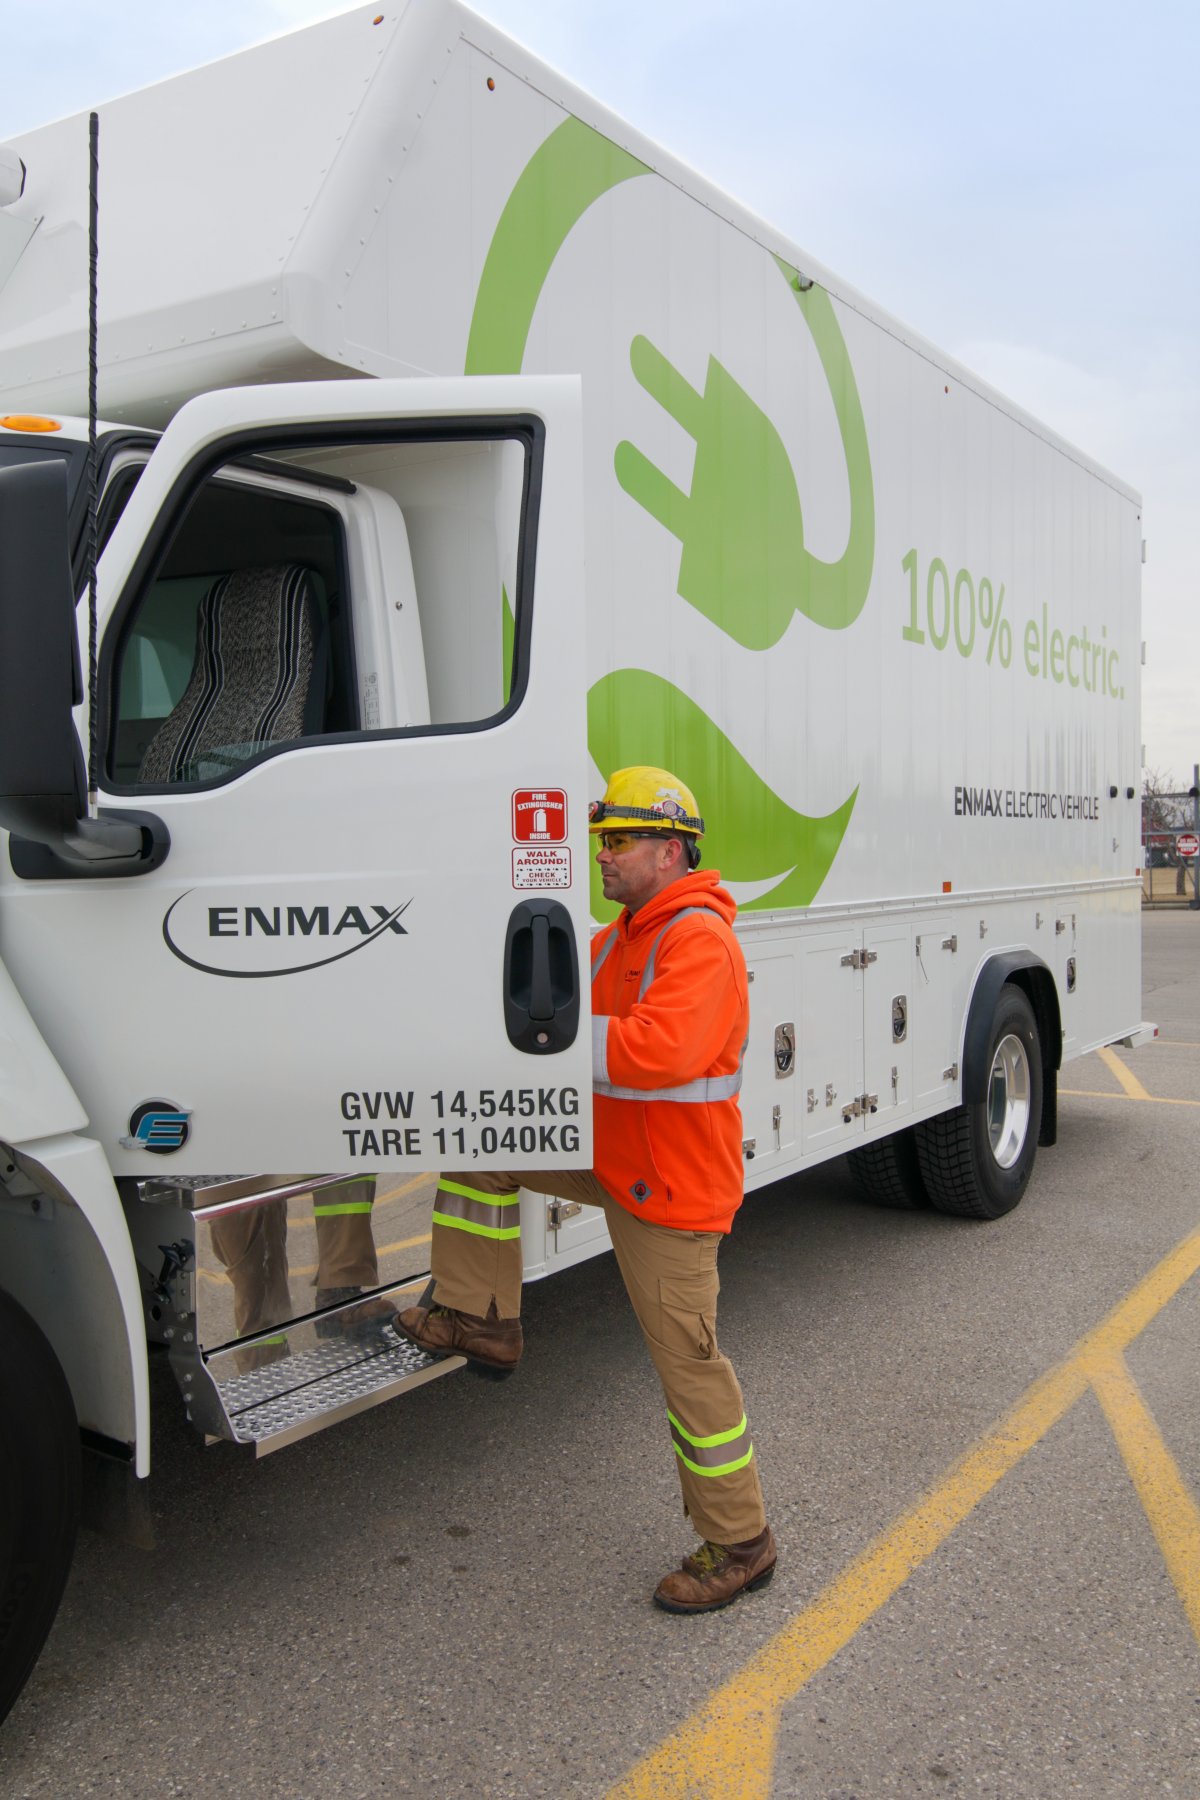 Enmax plugs mediumduty electric vehicles into its Calgary fleet